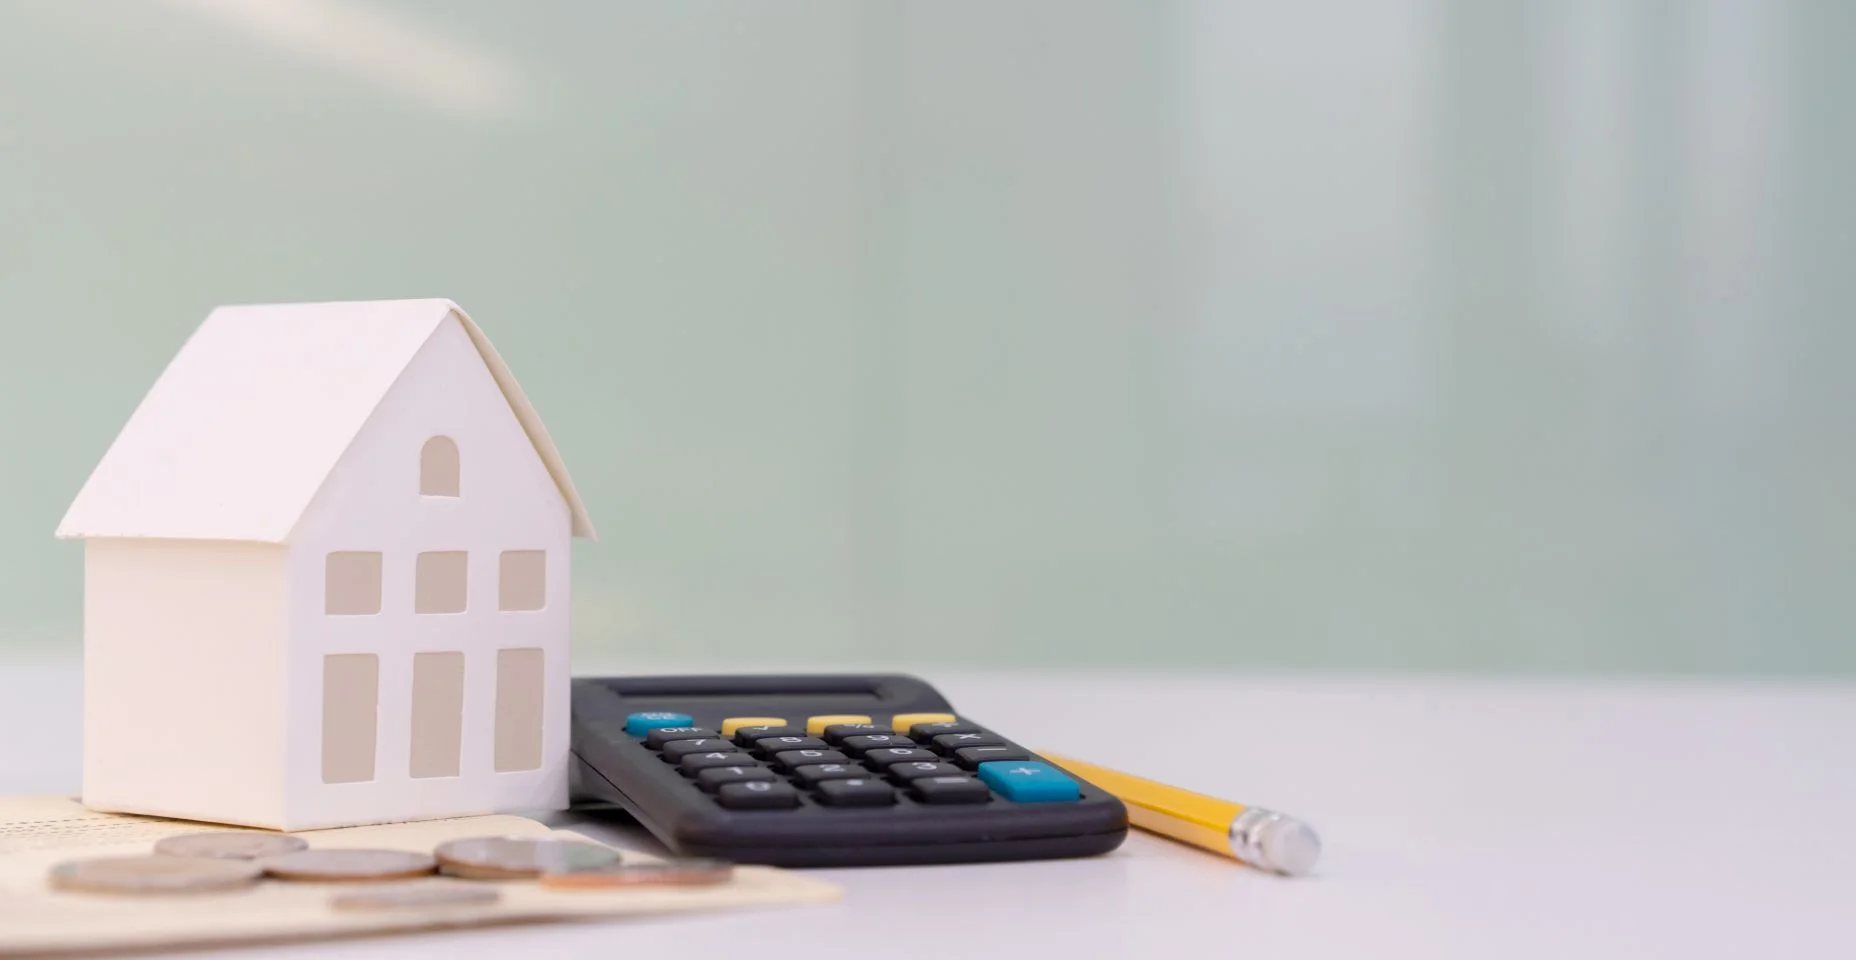 Fechar o modelo da casa sobre livro de contas bancárias com calculadora, moeda e lápis na mesa para o planejamento de refinanciamento de hipotecas de crédito imobiliário ou taxas de juros de retenção, negócios e conceito financeiro